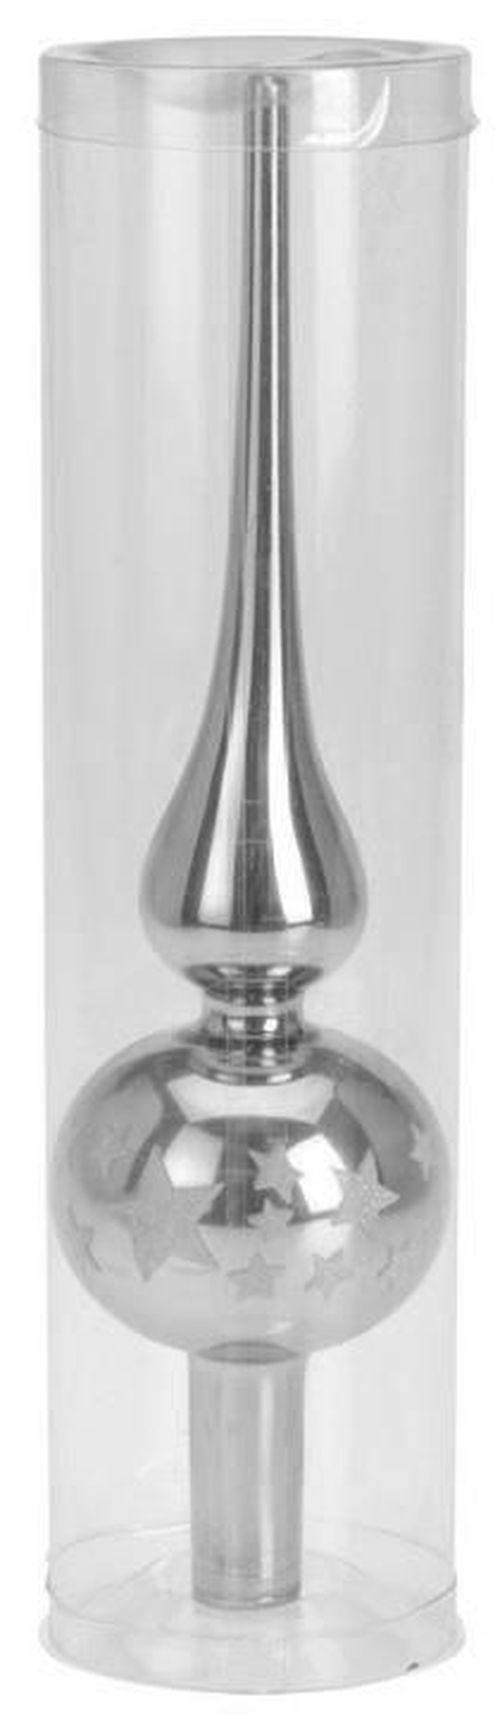 купить Новогодний декор Promstore 32955 Верхушка елочная стеклянная 25сm, серебряная в Кишинёве 